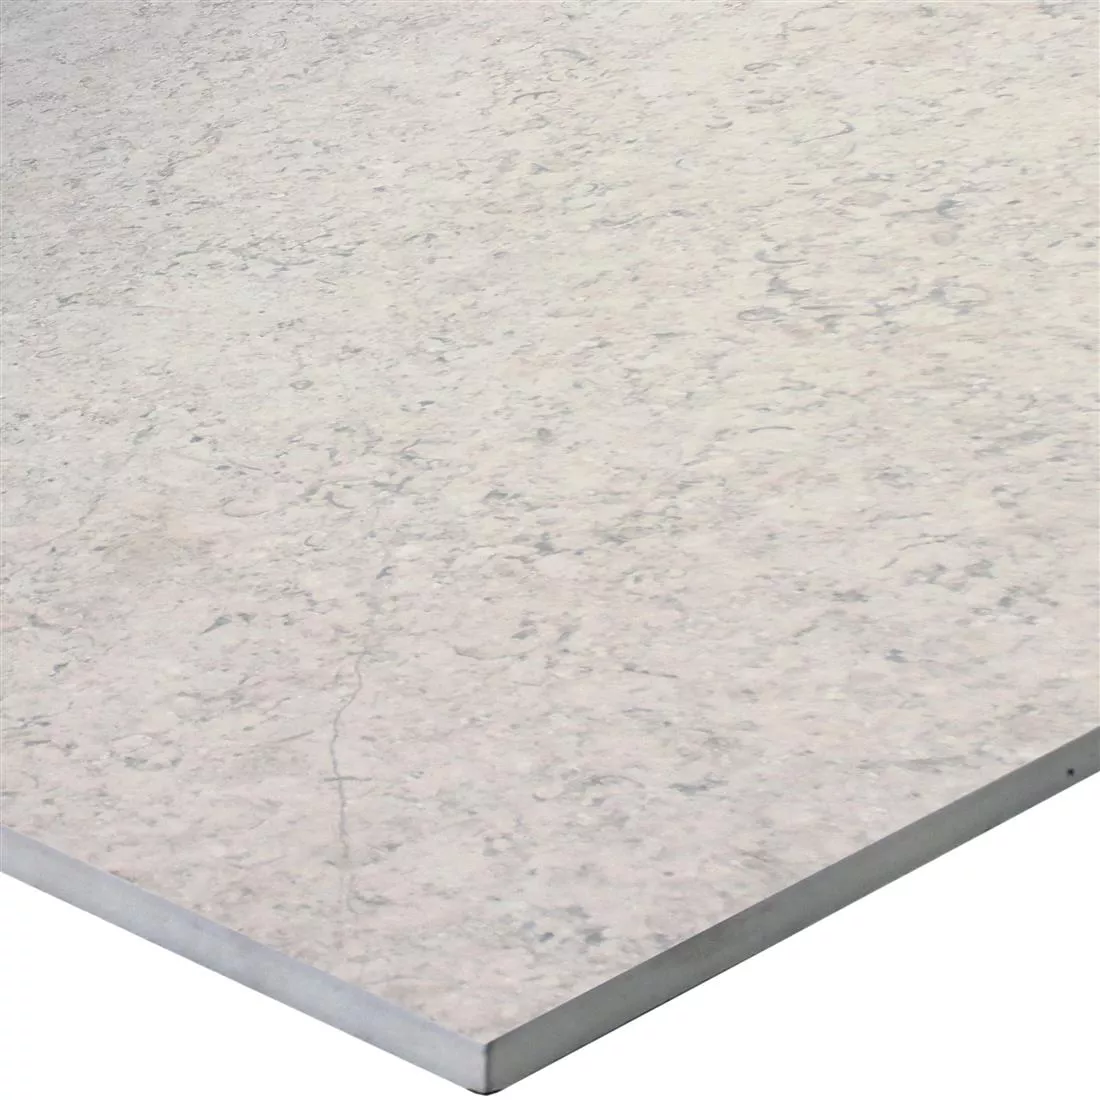 Sample Floor Tiles Stone Optic Shaydon Ivory 30x60cm